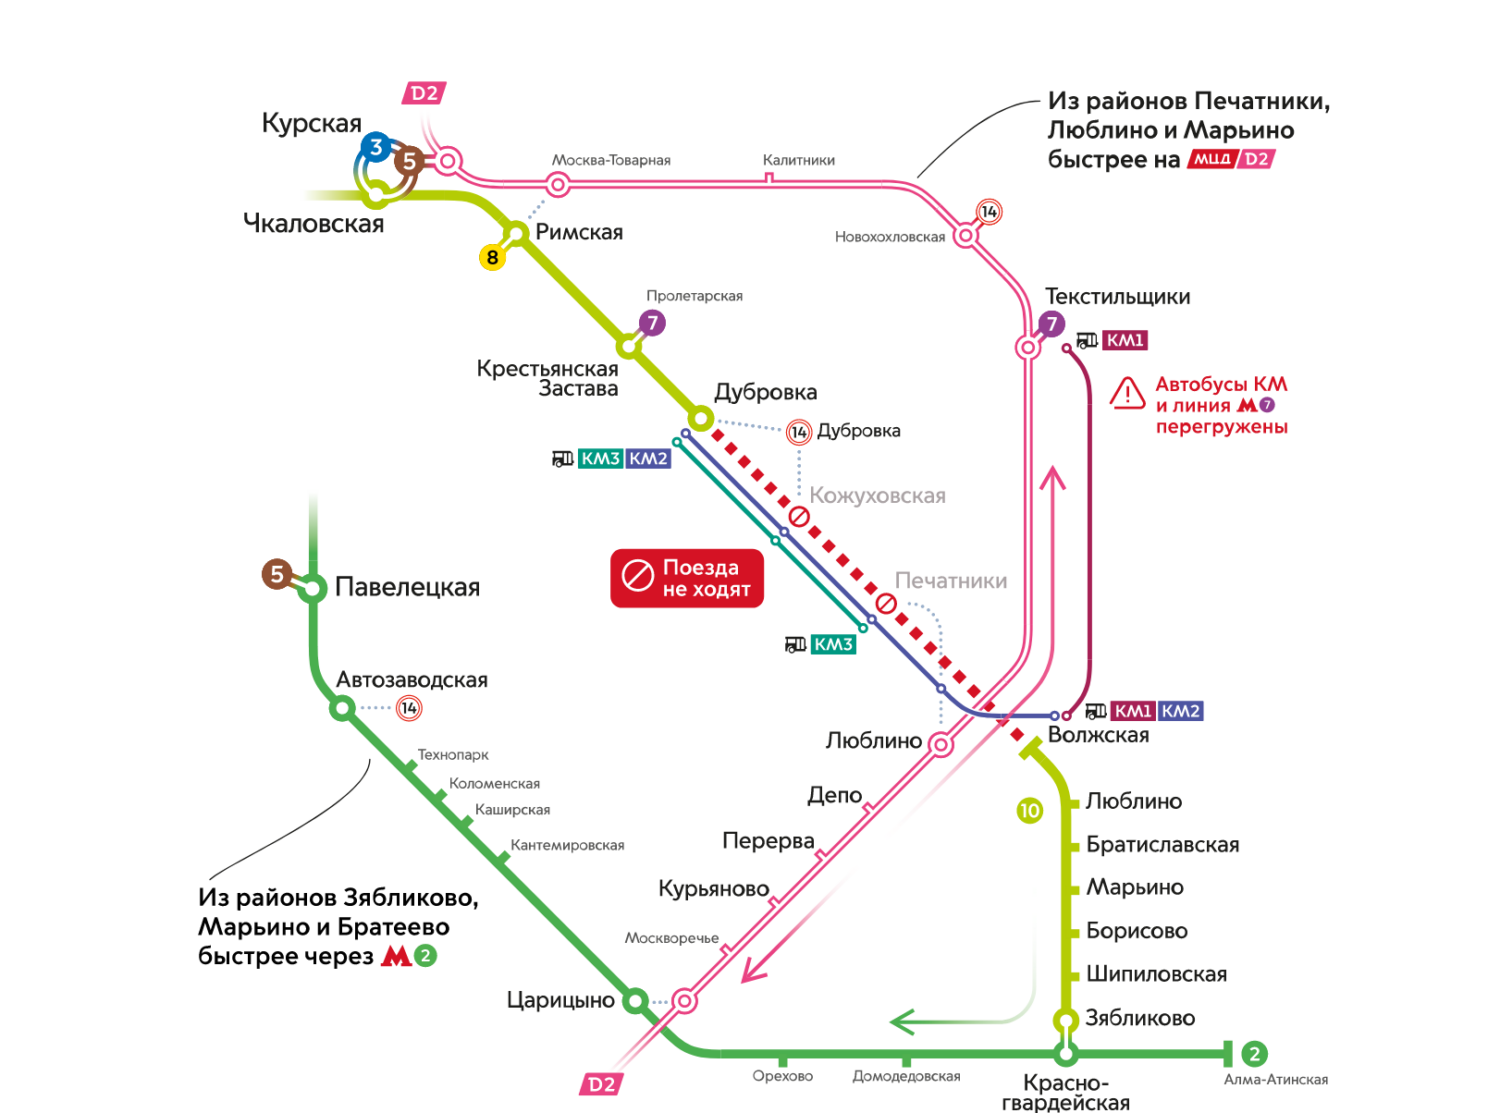 Участок Люблинско-Дмитровской линии метро закрылся до 9 мая